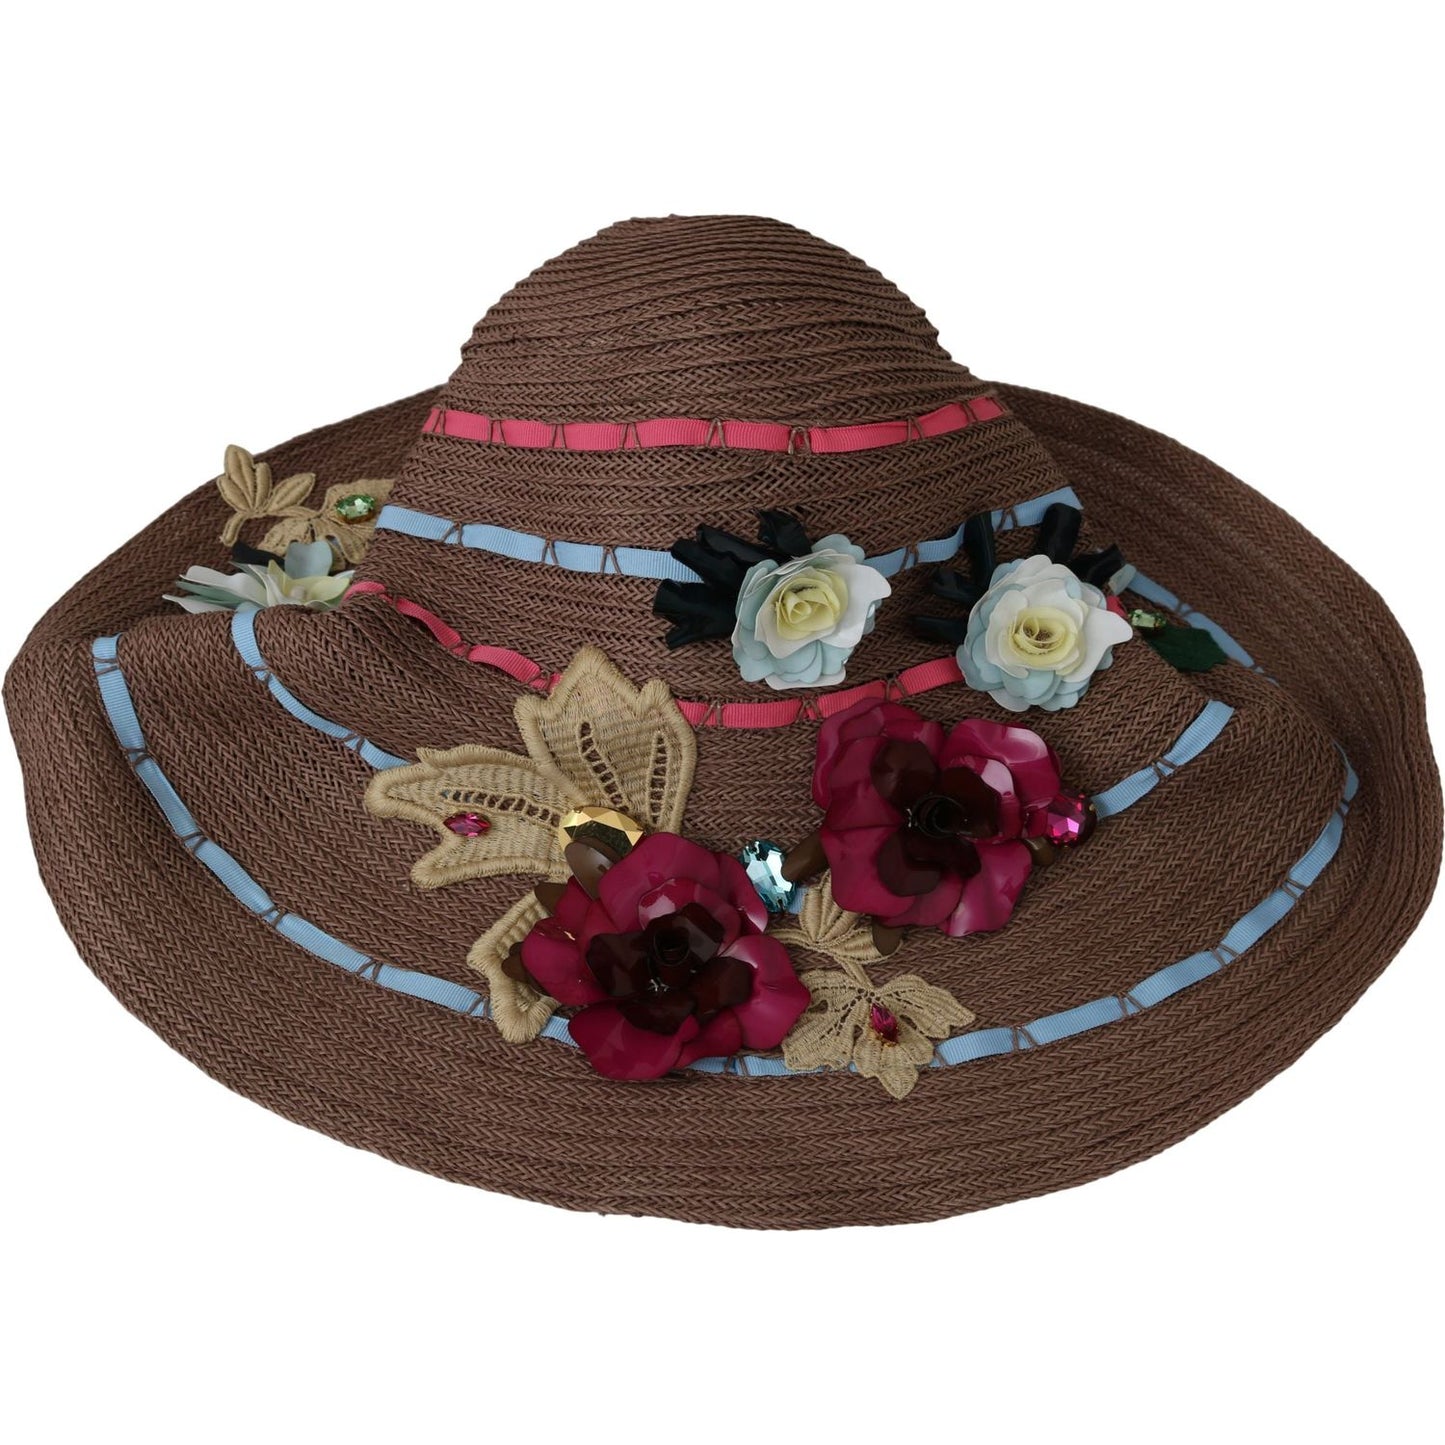 Dolce & Gabbana Elegant Floppy Straw Hat with Floral Accents Hat brown-floral-wide-brim-straw-floppy-cap-hat